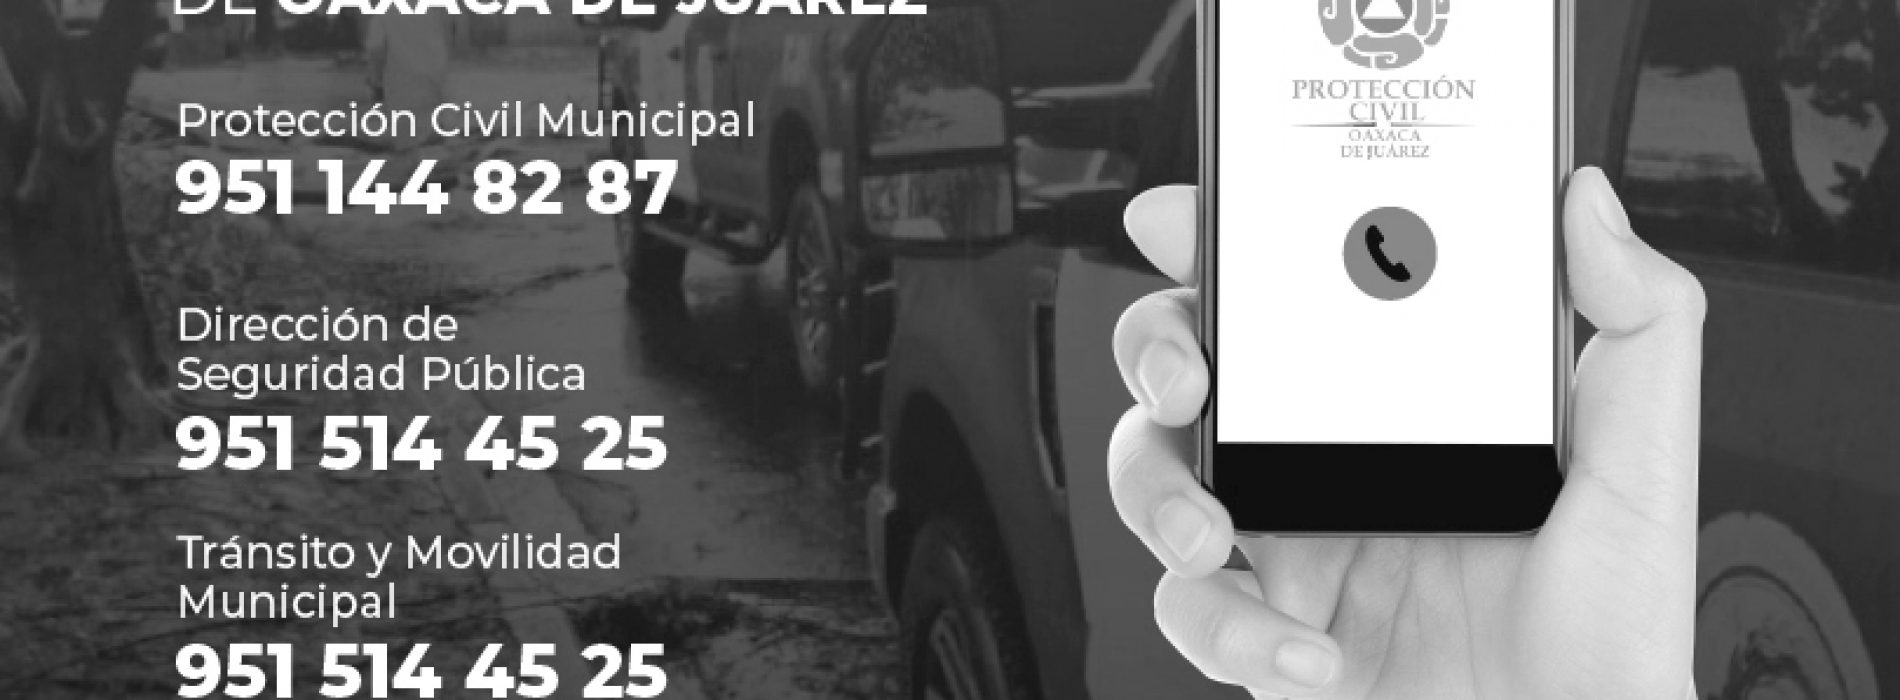 Ayuntamiento de Oaxaca pone a disposición líneas telefónicas para reportar incidentes por lluvias